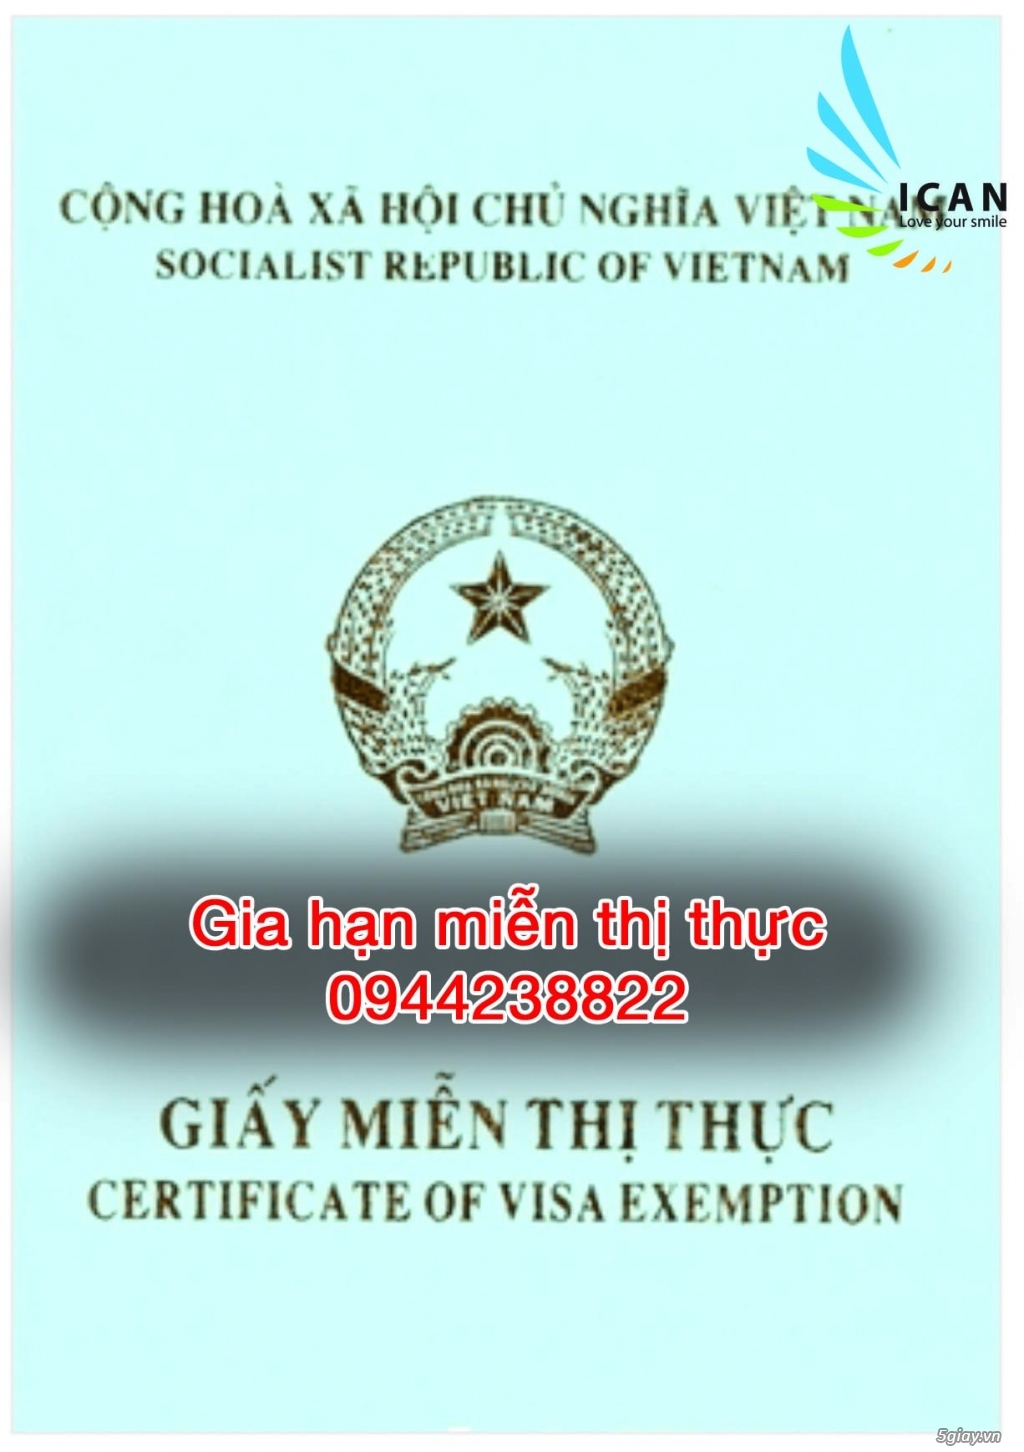 Gia hạn visa việt nam tại TPHCM-Quận Phú Nhuận - 4